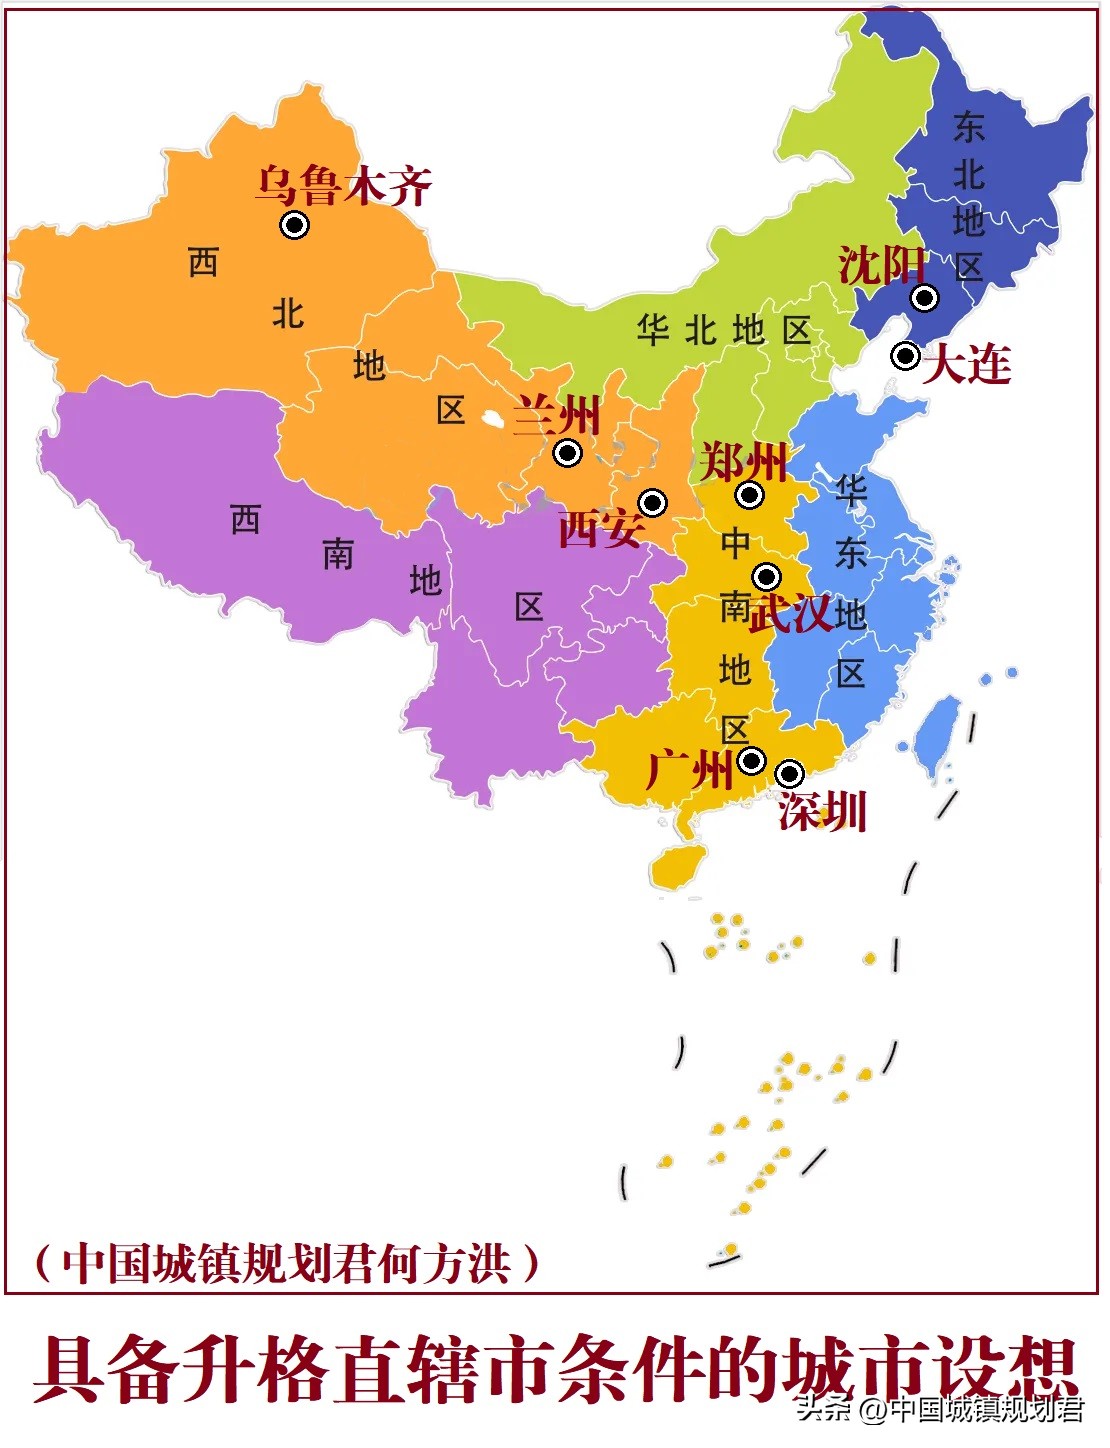 中国有几个直辖市 中国有几个特区